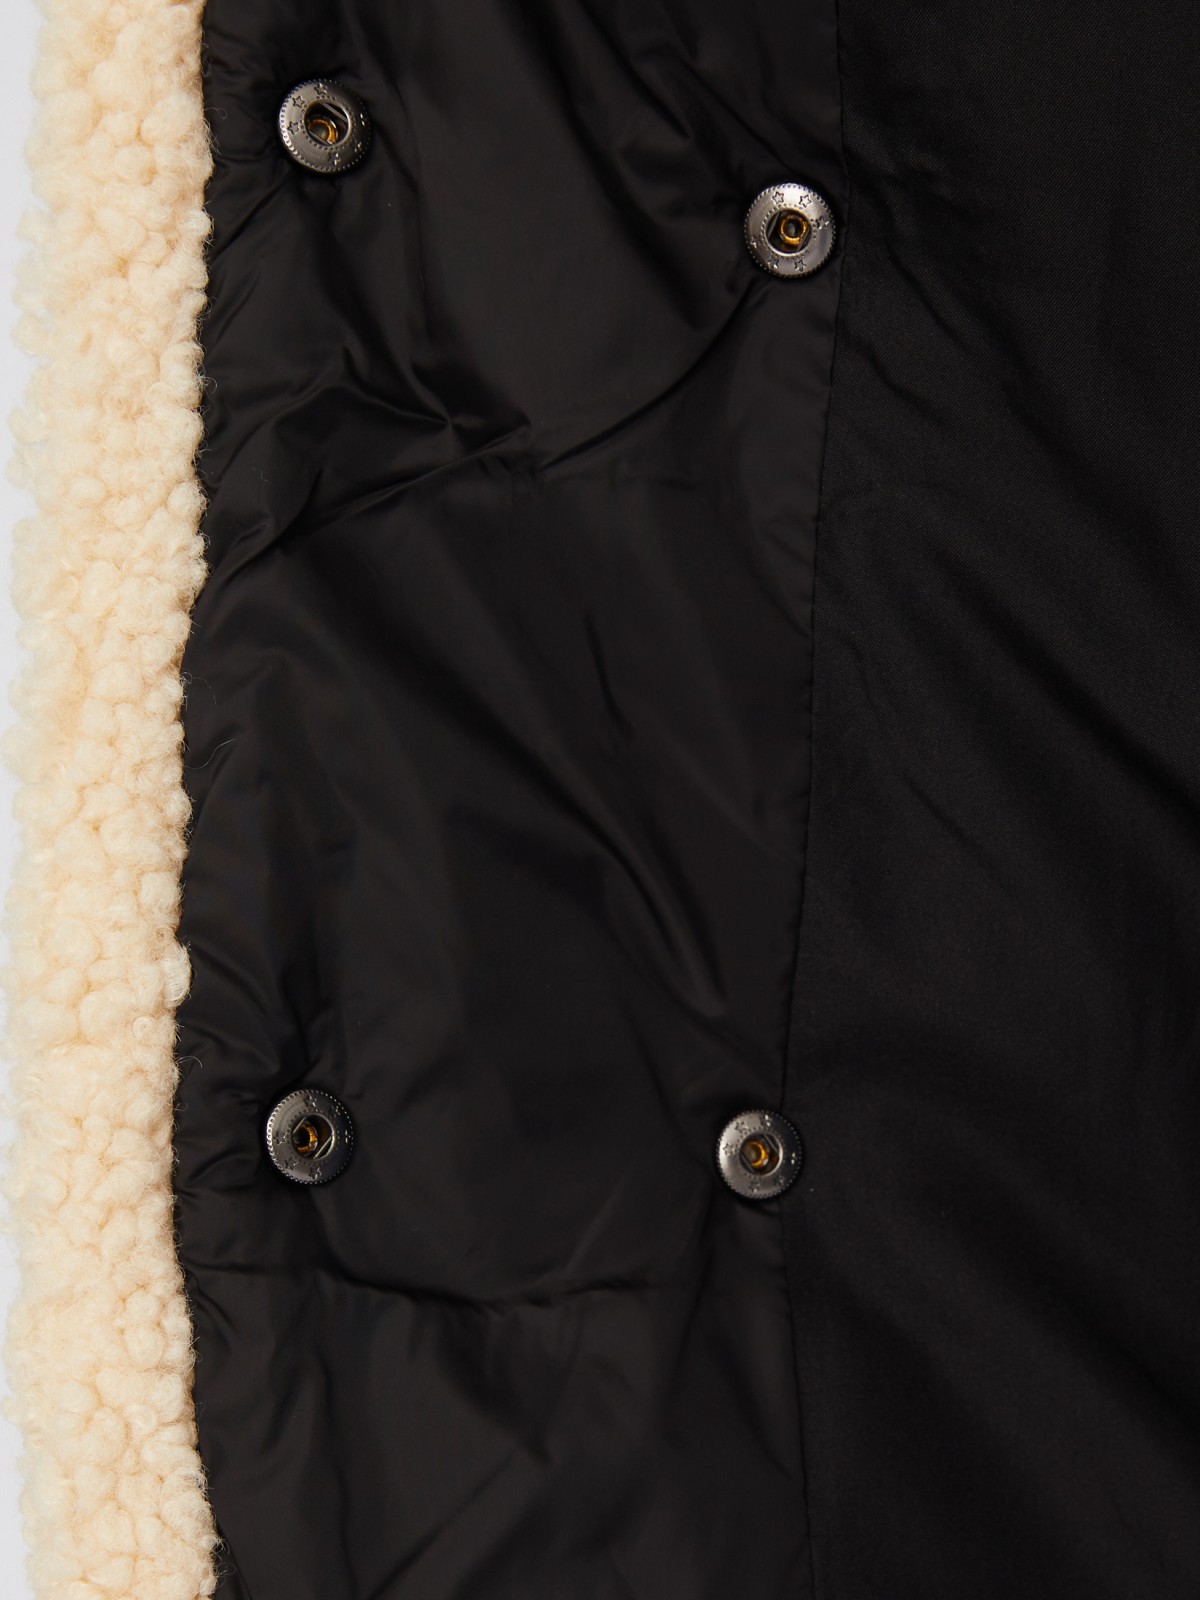 Тёплая стёганая куртка-пальто с отложным воротником и отделкой из искусственного меха zolla 023335239014, цвет черный, размер XS - фото 5